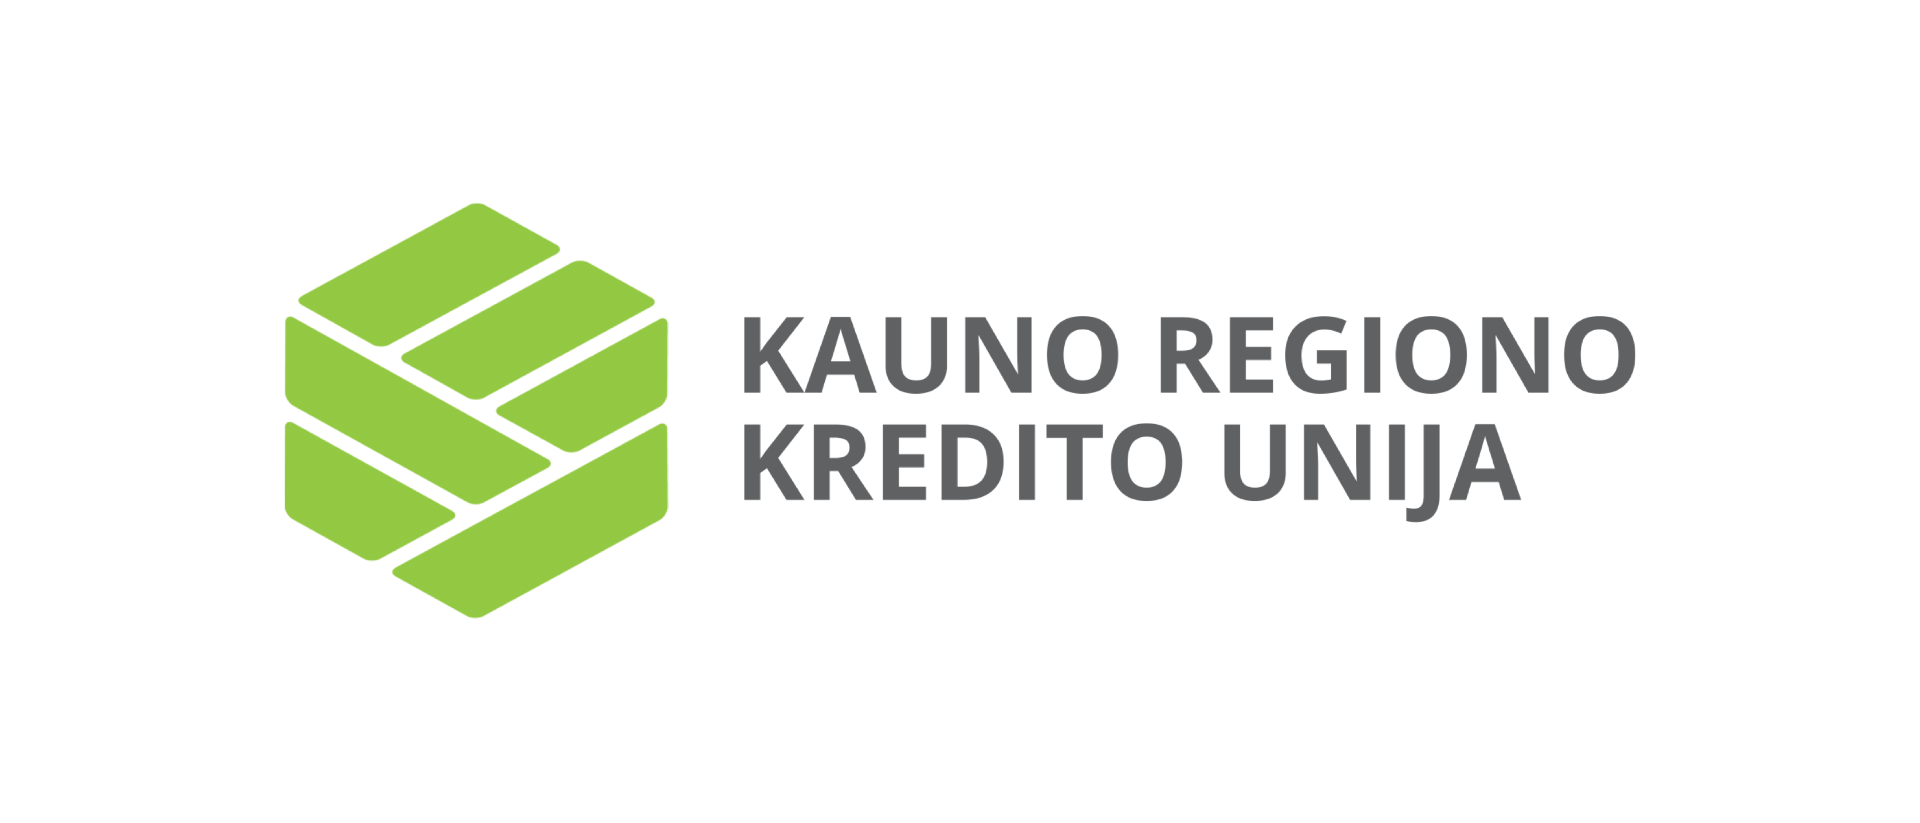 Kauno regiono kredito unija